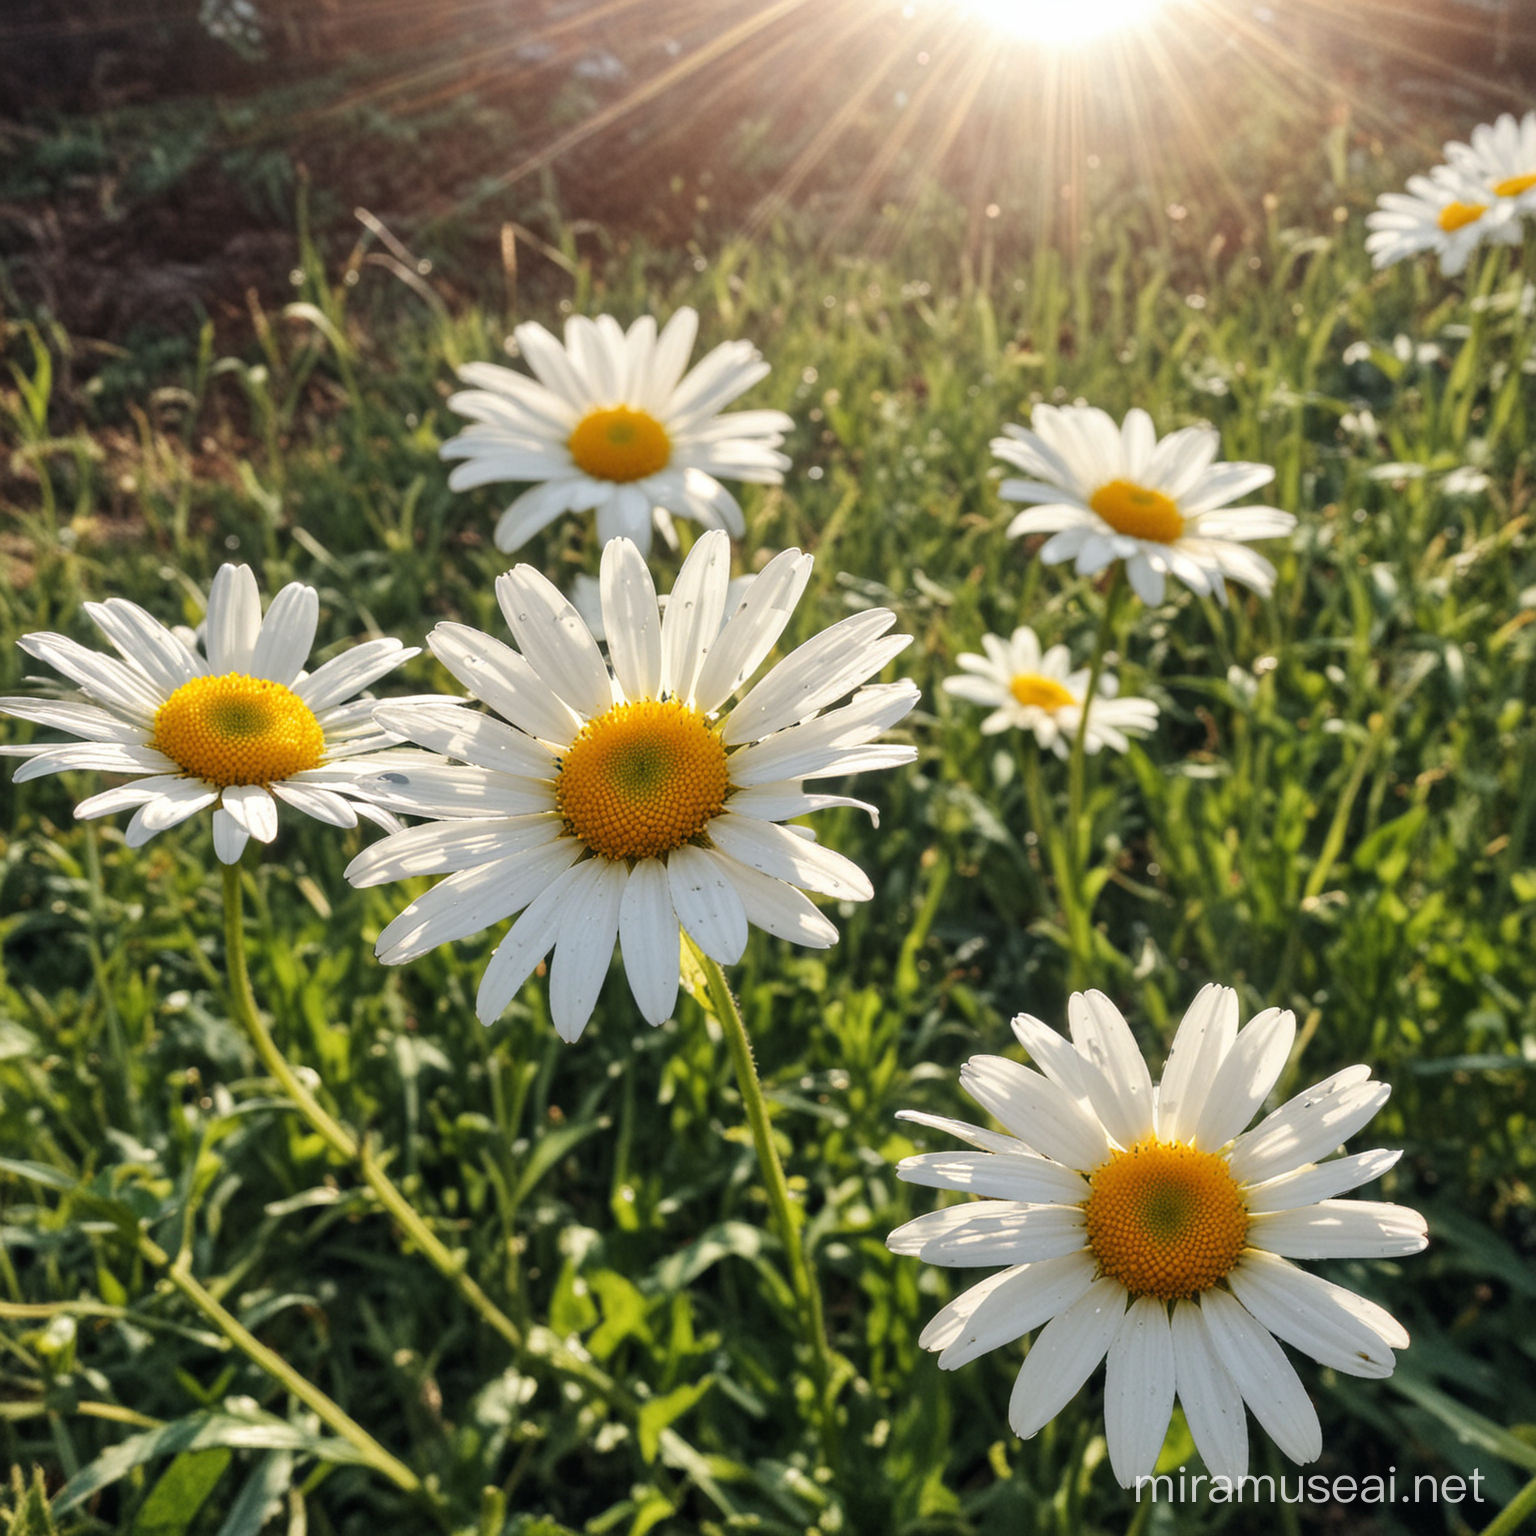 Joyful Daisy Blooms under the Warm Sunlight